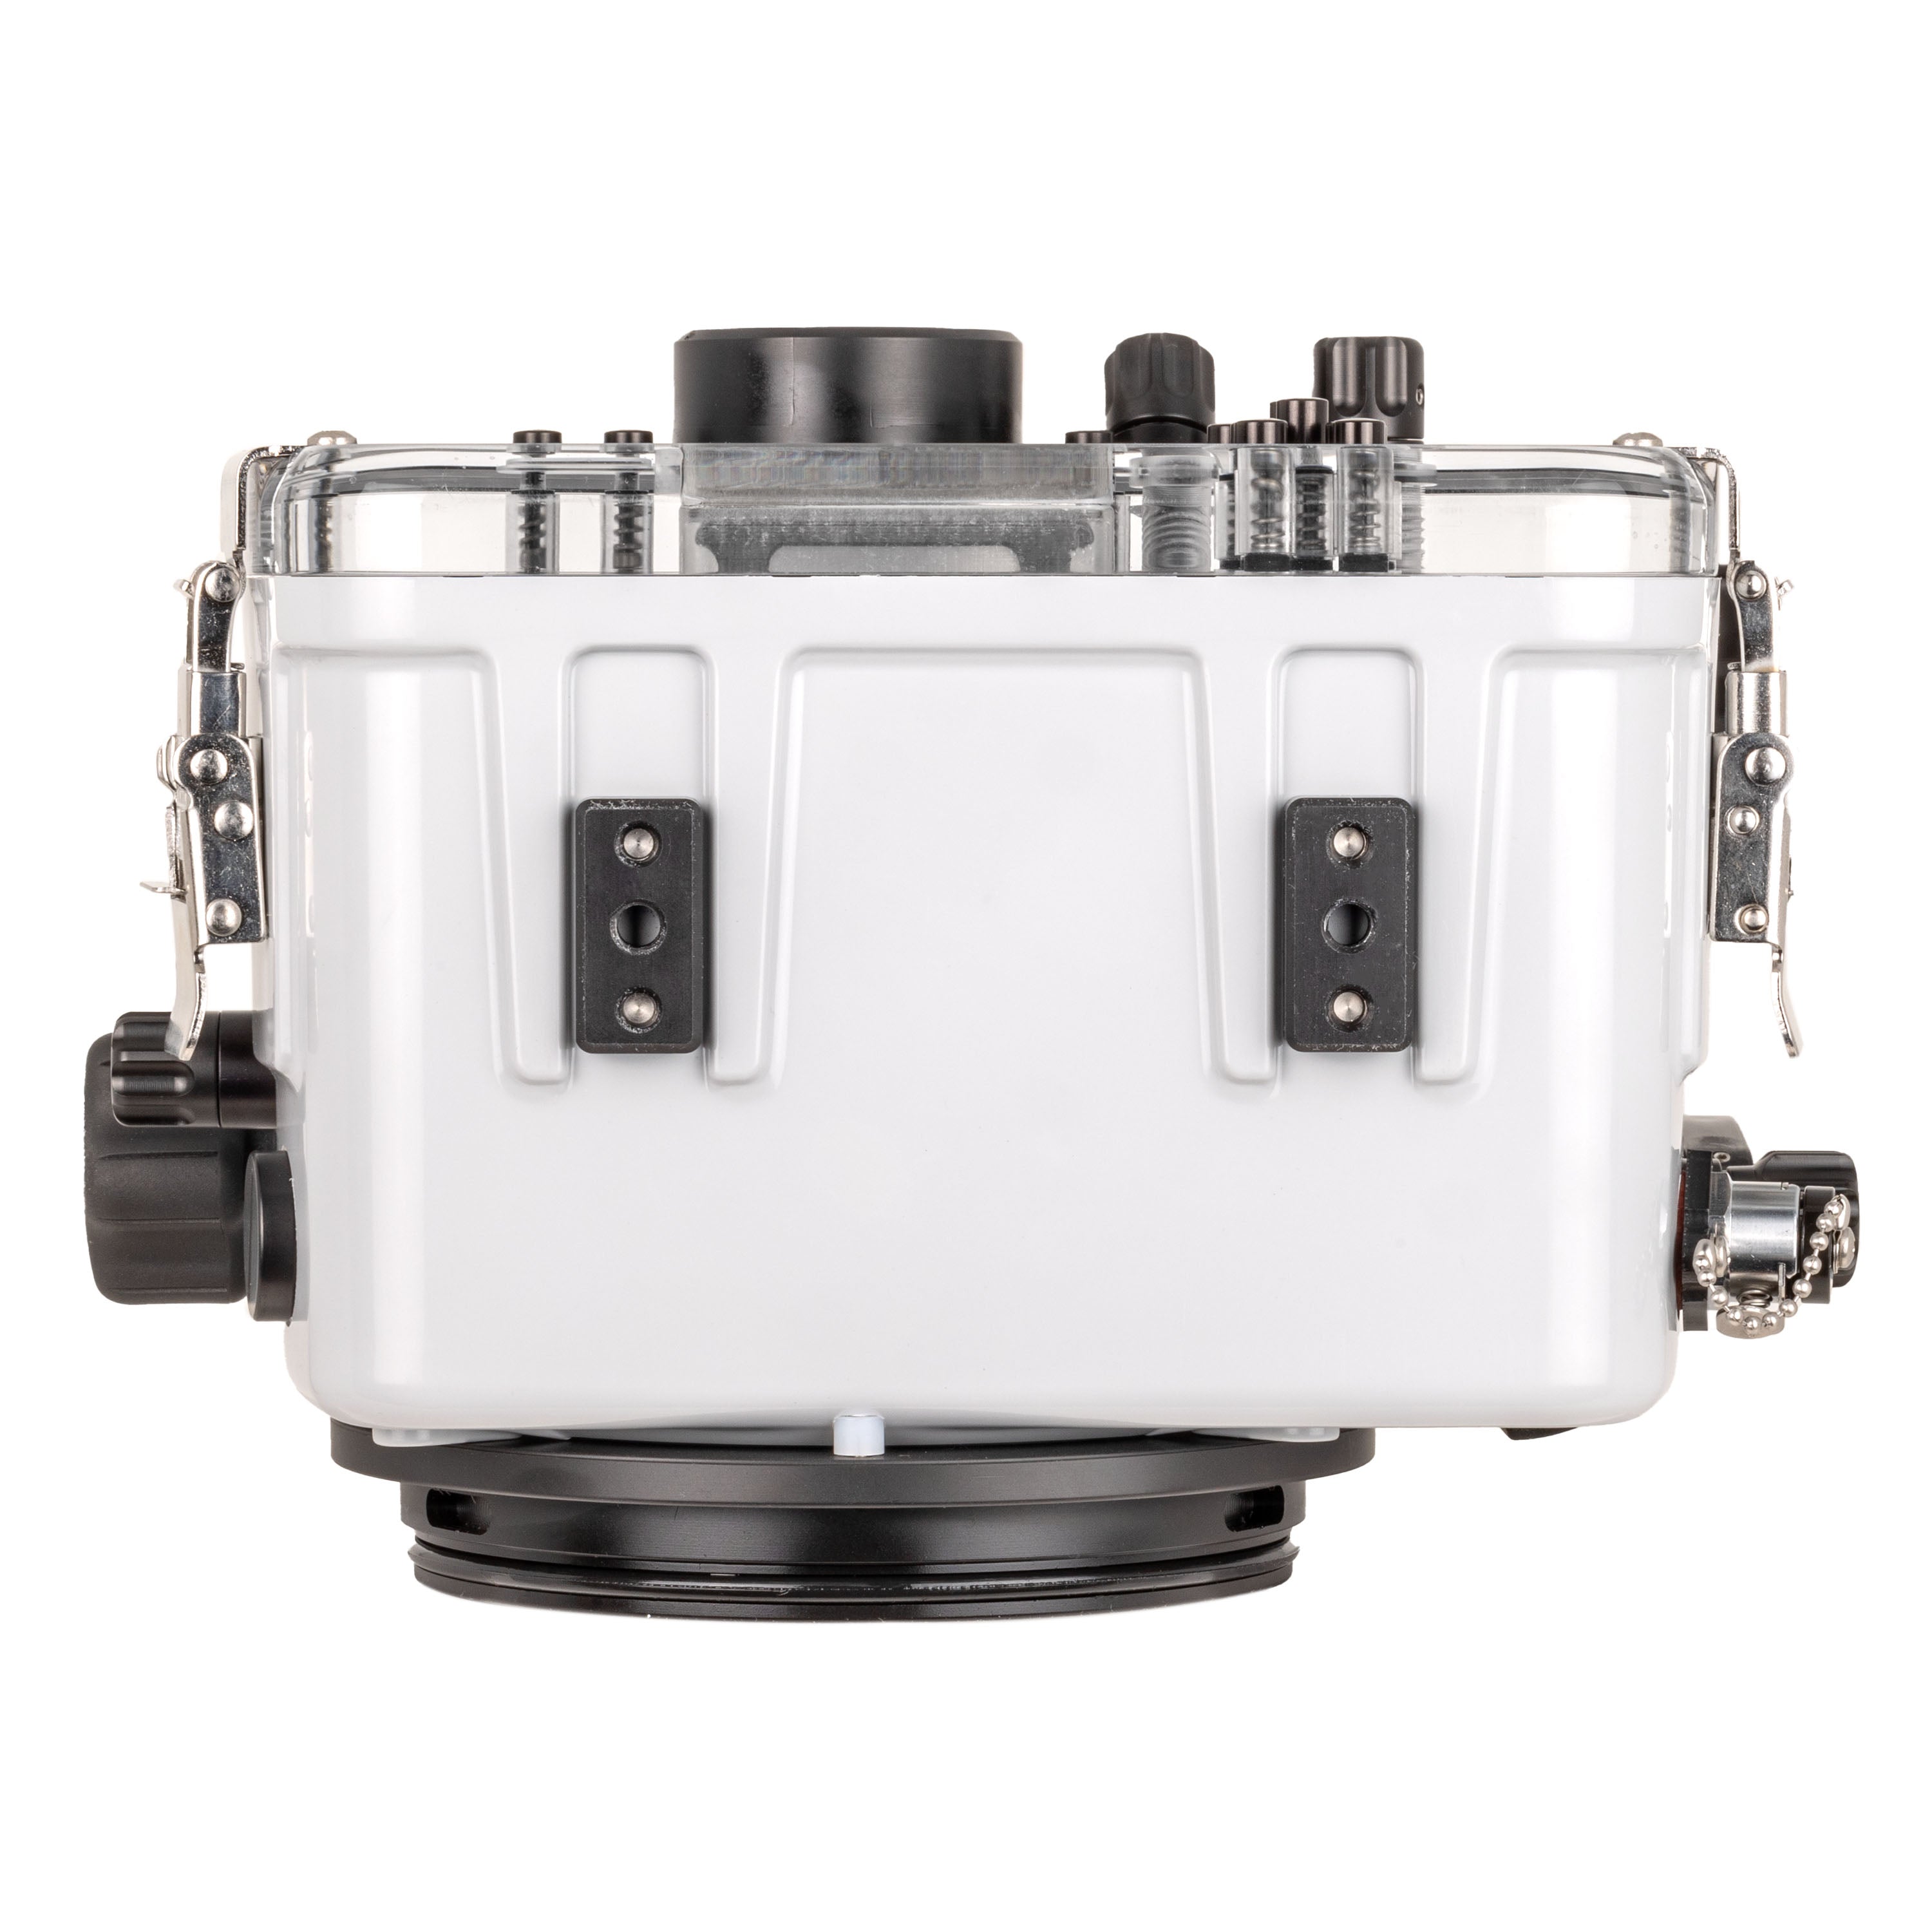 Ikelite 200DL Underwater Housing for Nikon Z8 Mirrorless Digital Cameras